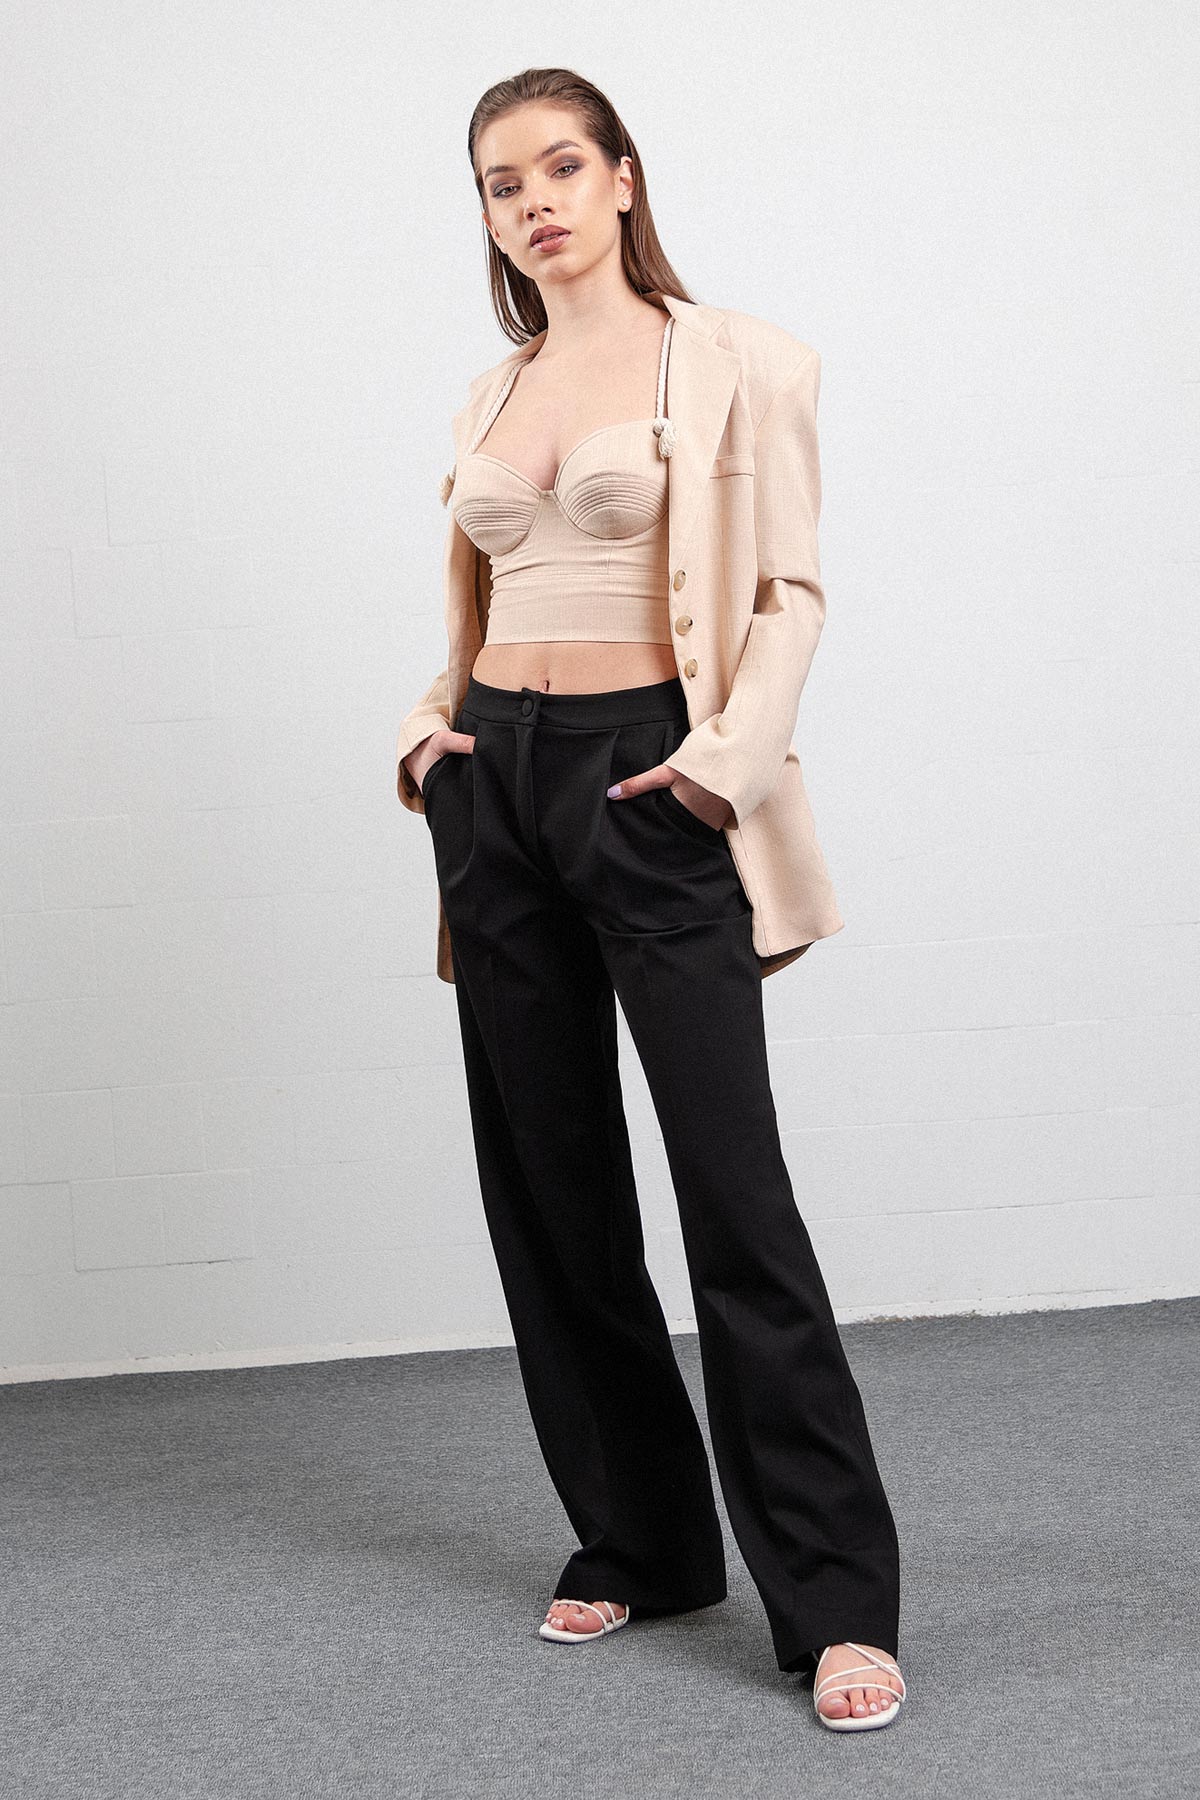 Pantaloni negri din in evazati Confident Concept Store